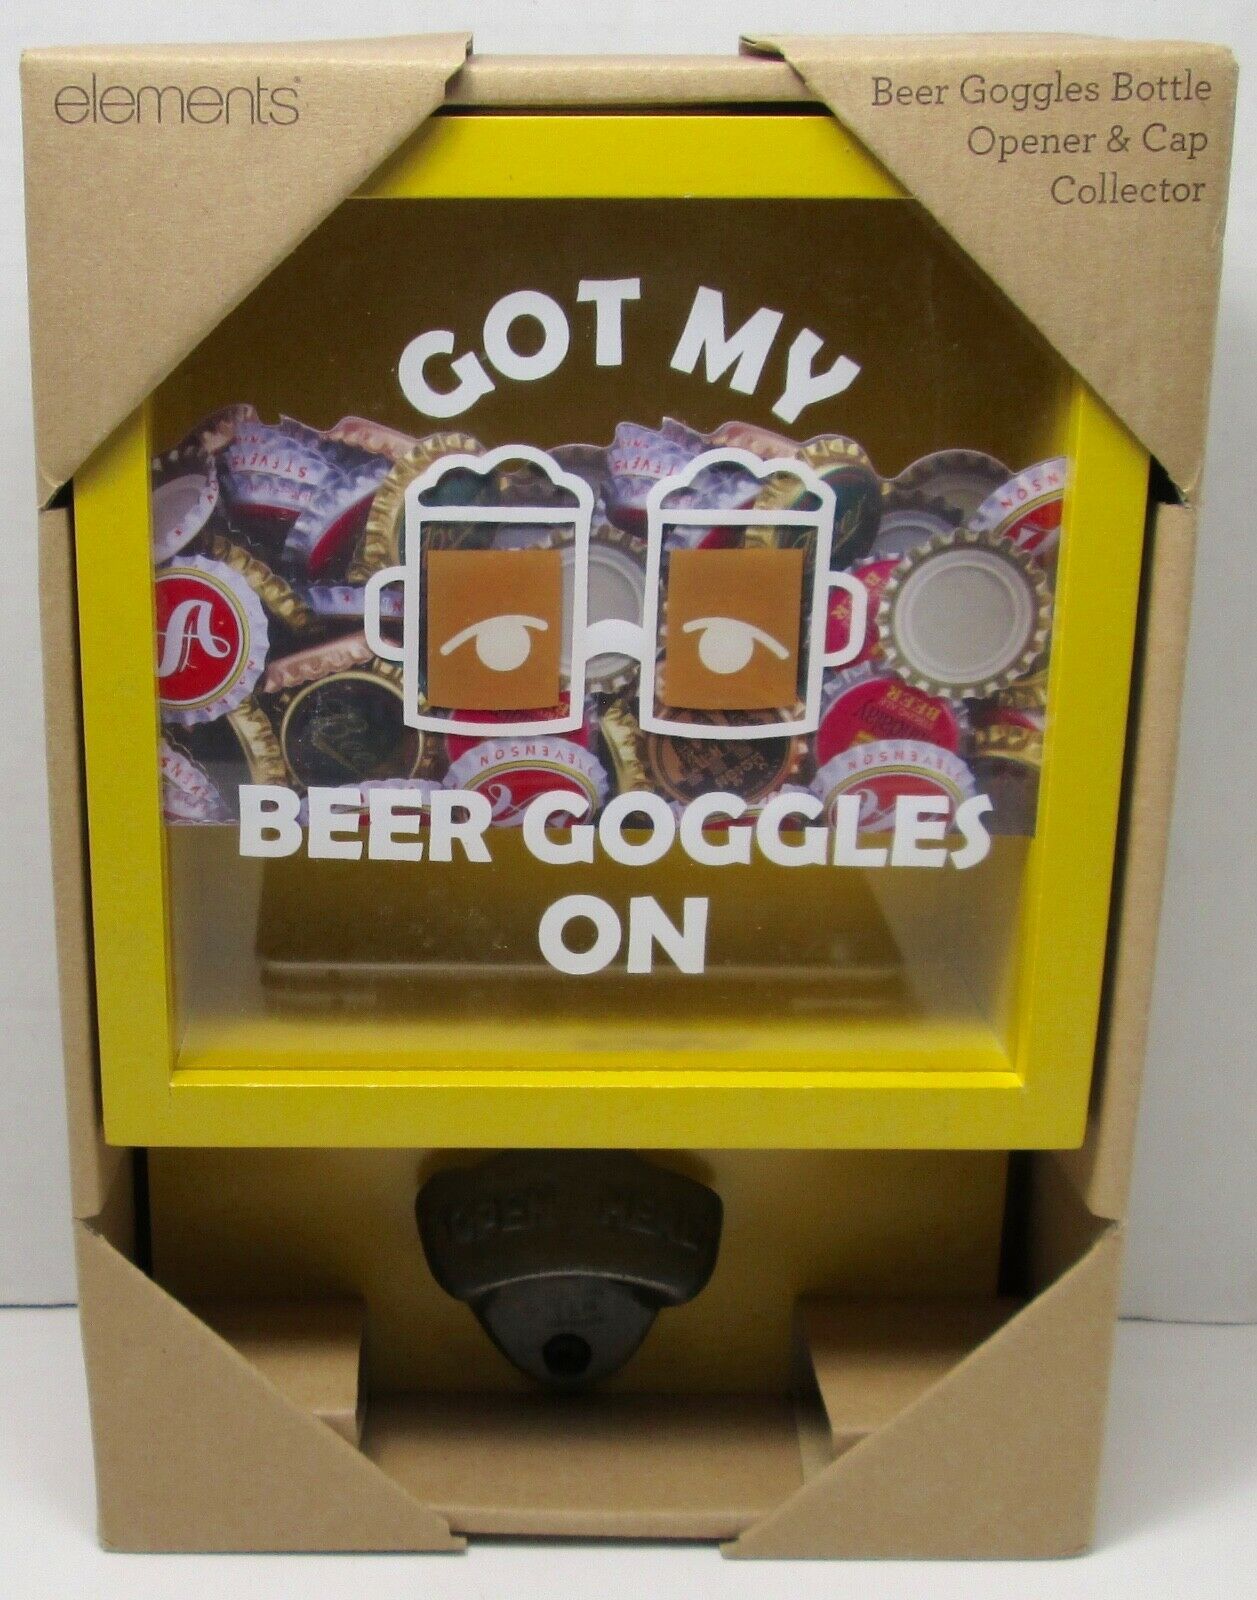 Elements Beer Goggles Bottle Opener & Cap Collector - $21.84